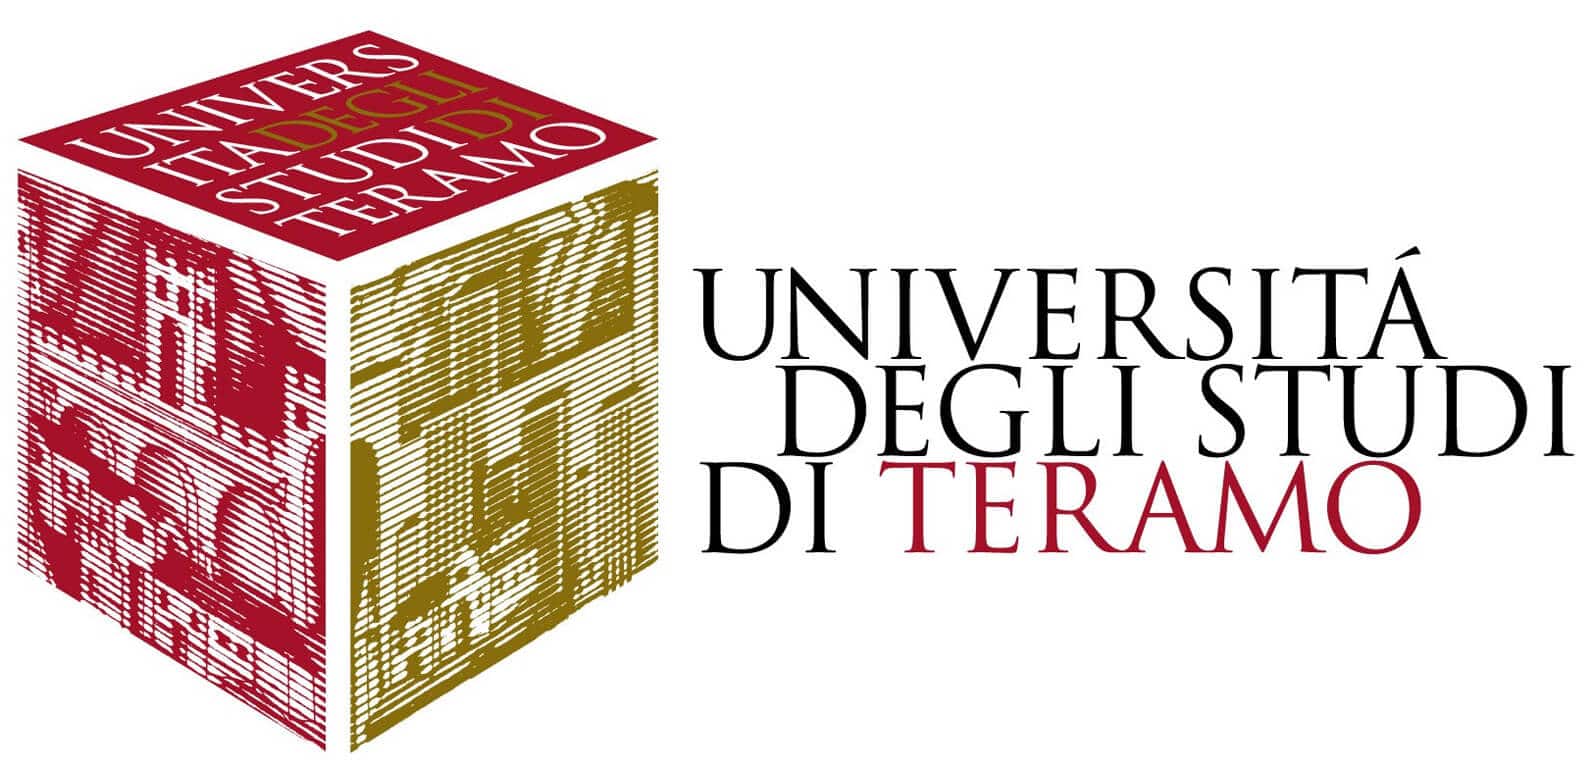 UniTe-Universita-di-Teramo